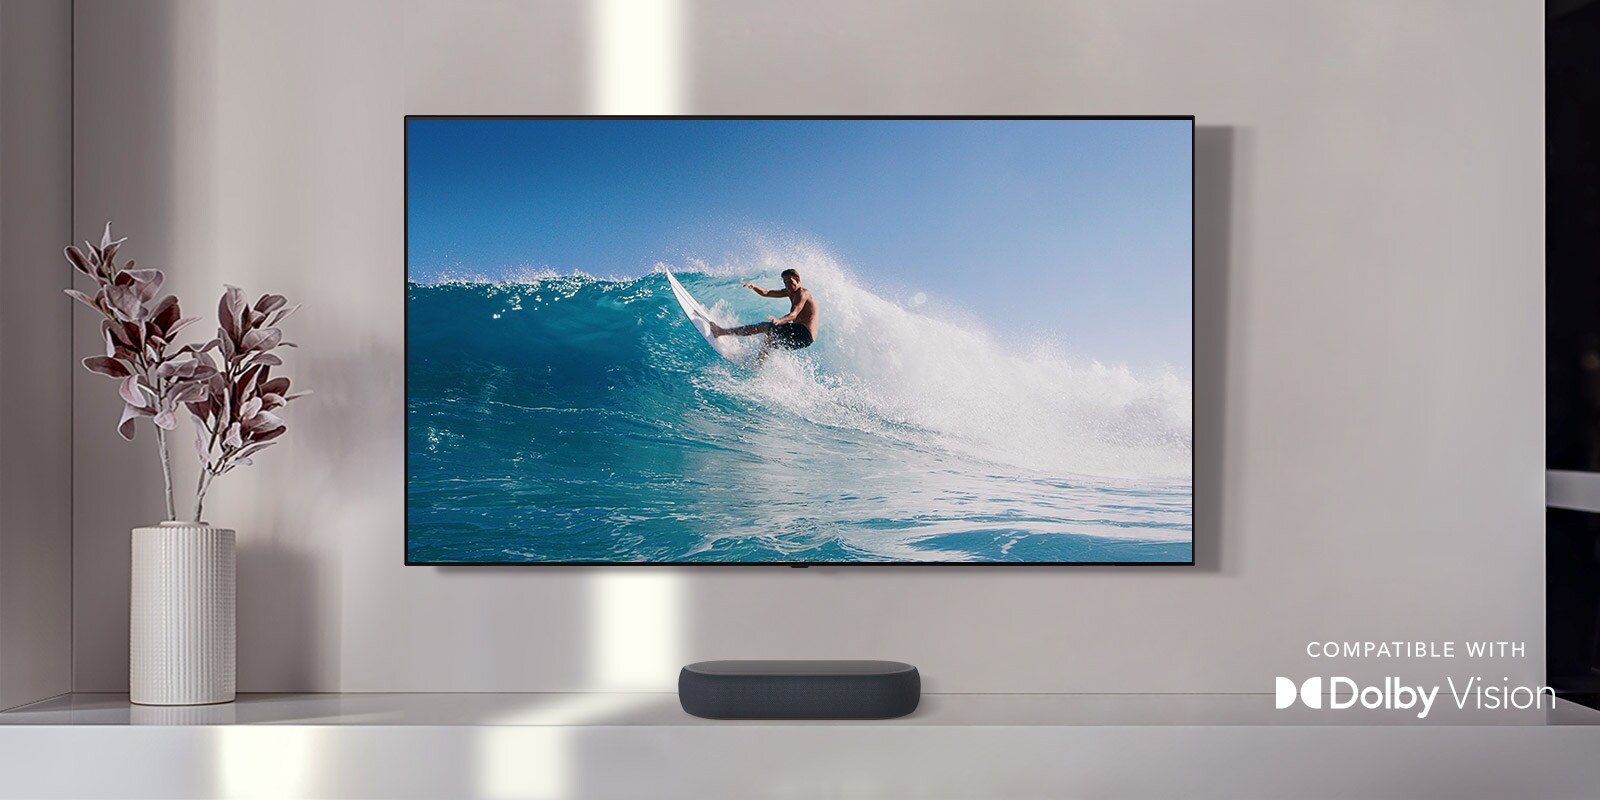 Η τηλεόραση είναι τοποθετημένη στον τοίχο. Στην τηλεόραση φαίνεται ένας άντρας που κάνει σερφ επάνω σε ένα μεγάλο κύμα. Το LG Soundbar βρίσκεται ακριβώς κάτω από την τηλεόραση, σε ένα λευκό ράφι. Ακριβώς δίπλα στο soundbar βρίσκεται ένα βάζο με ένα λουλούδι. Το λογότυπο Dolby Vision είναι τοποθετημένο στην κάτω δεξιά γωνία.